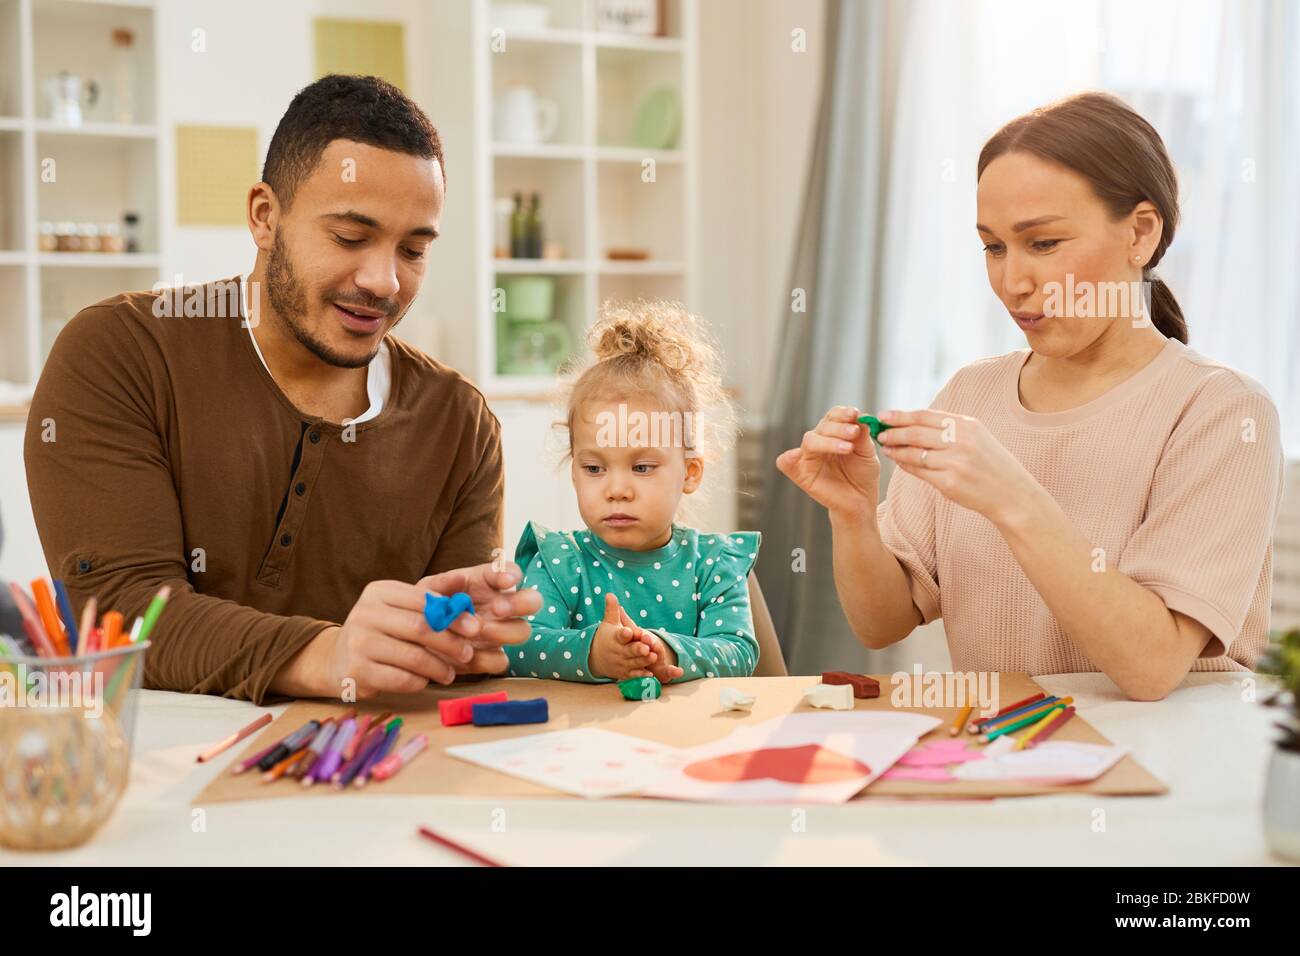 Les parents adorants passent avec leur petite fille assise ensemble à des modèles de fabrication de table utilisant la pâte de jeu Banque D'Images